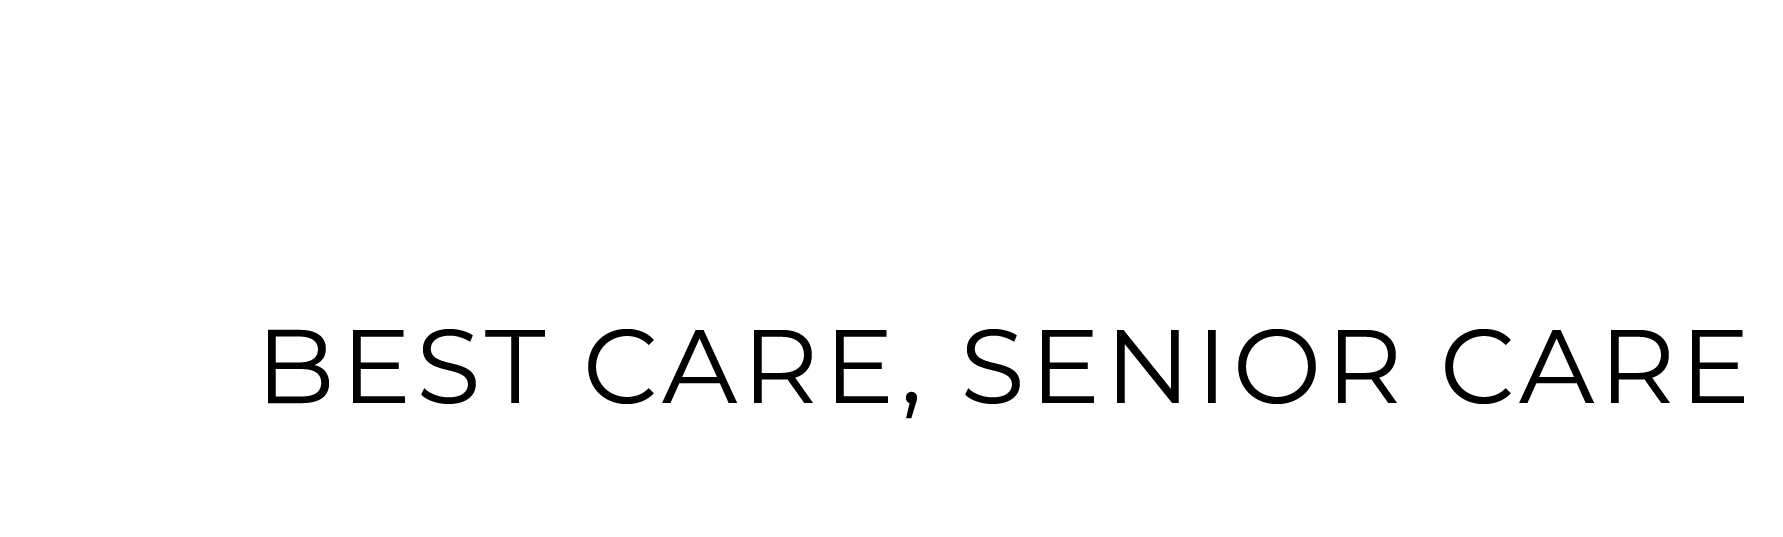 Senior Home Care Private Companionship Services In Naperville Illinois Elderly Health Care Agency Respite Care For Elder